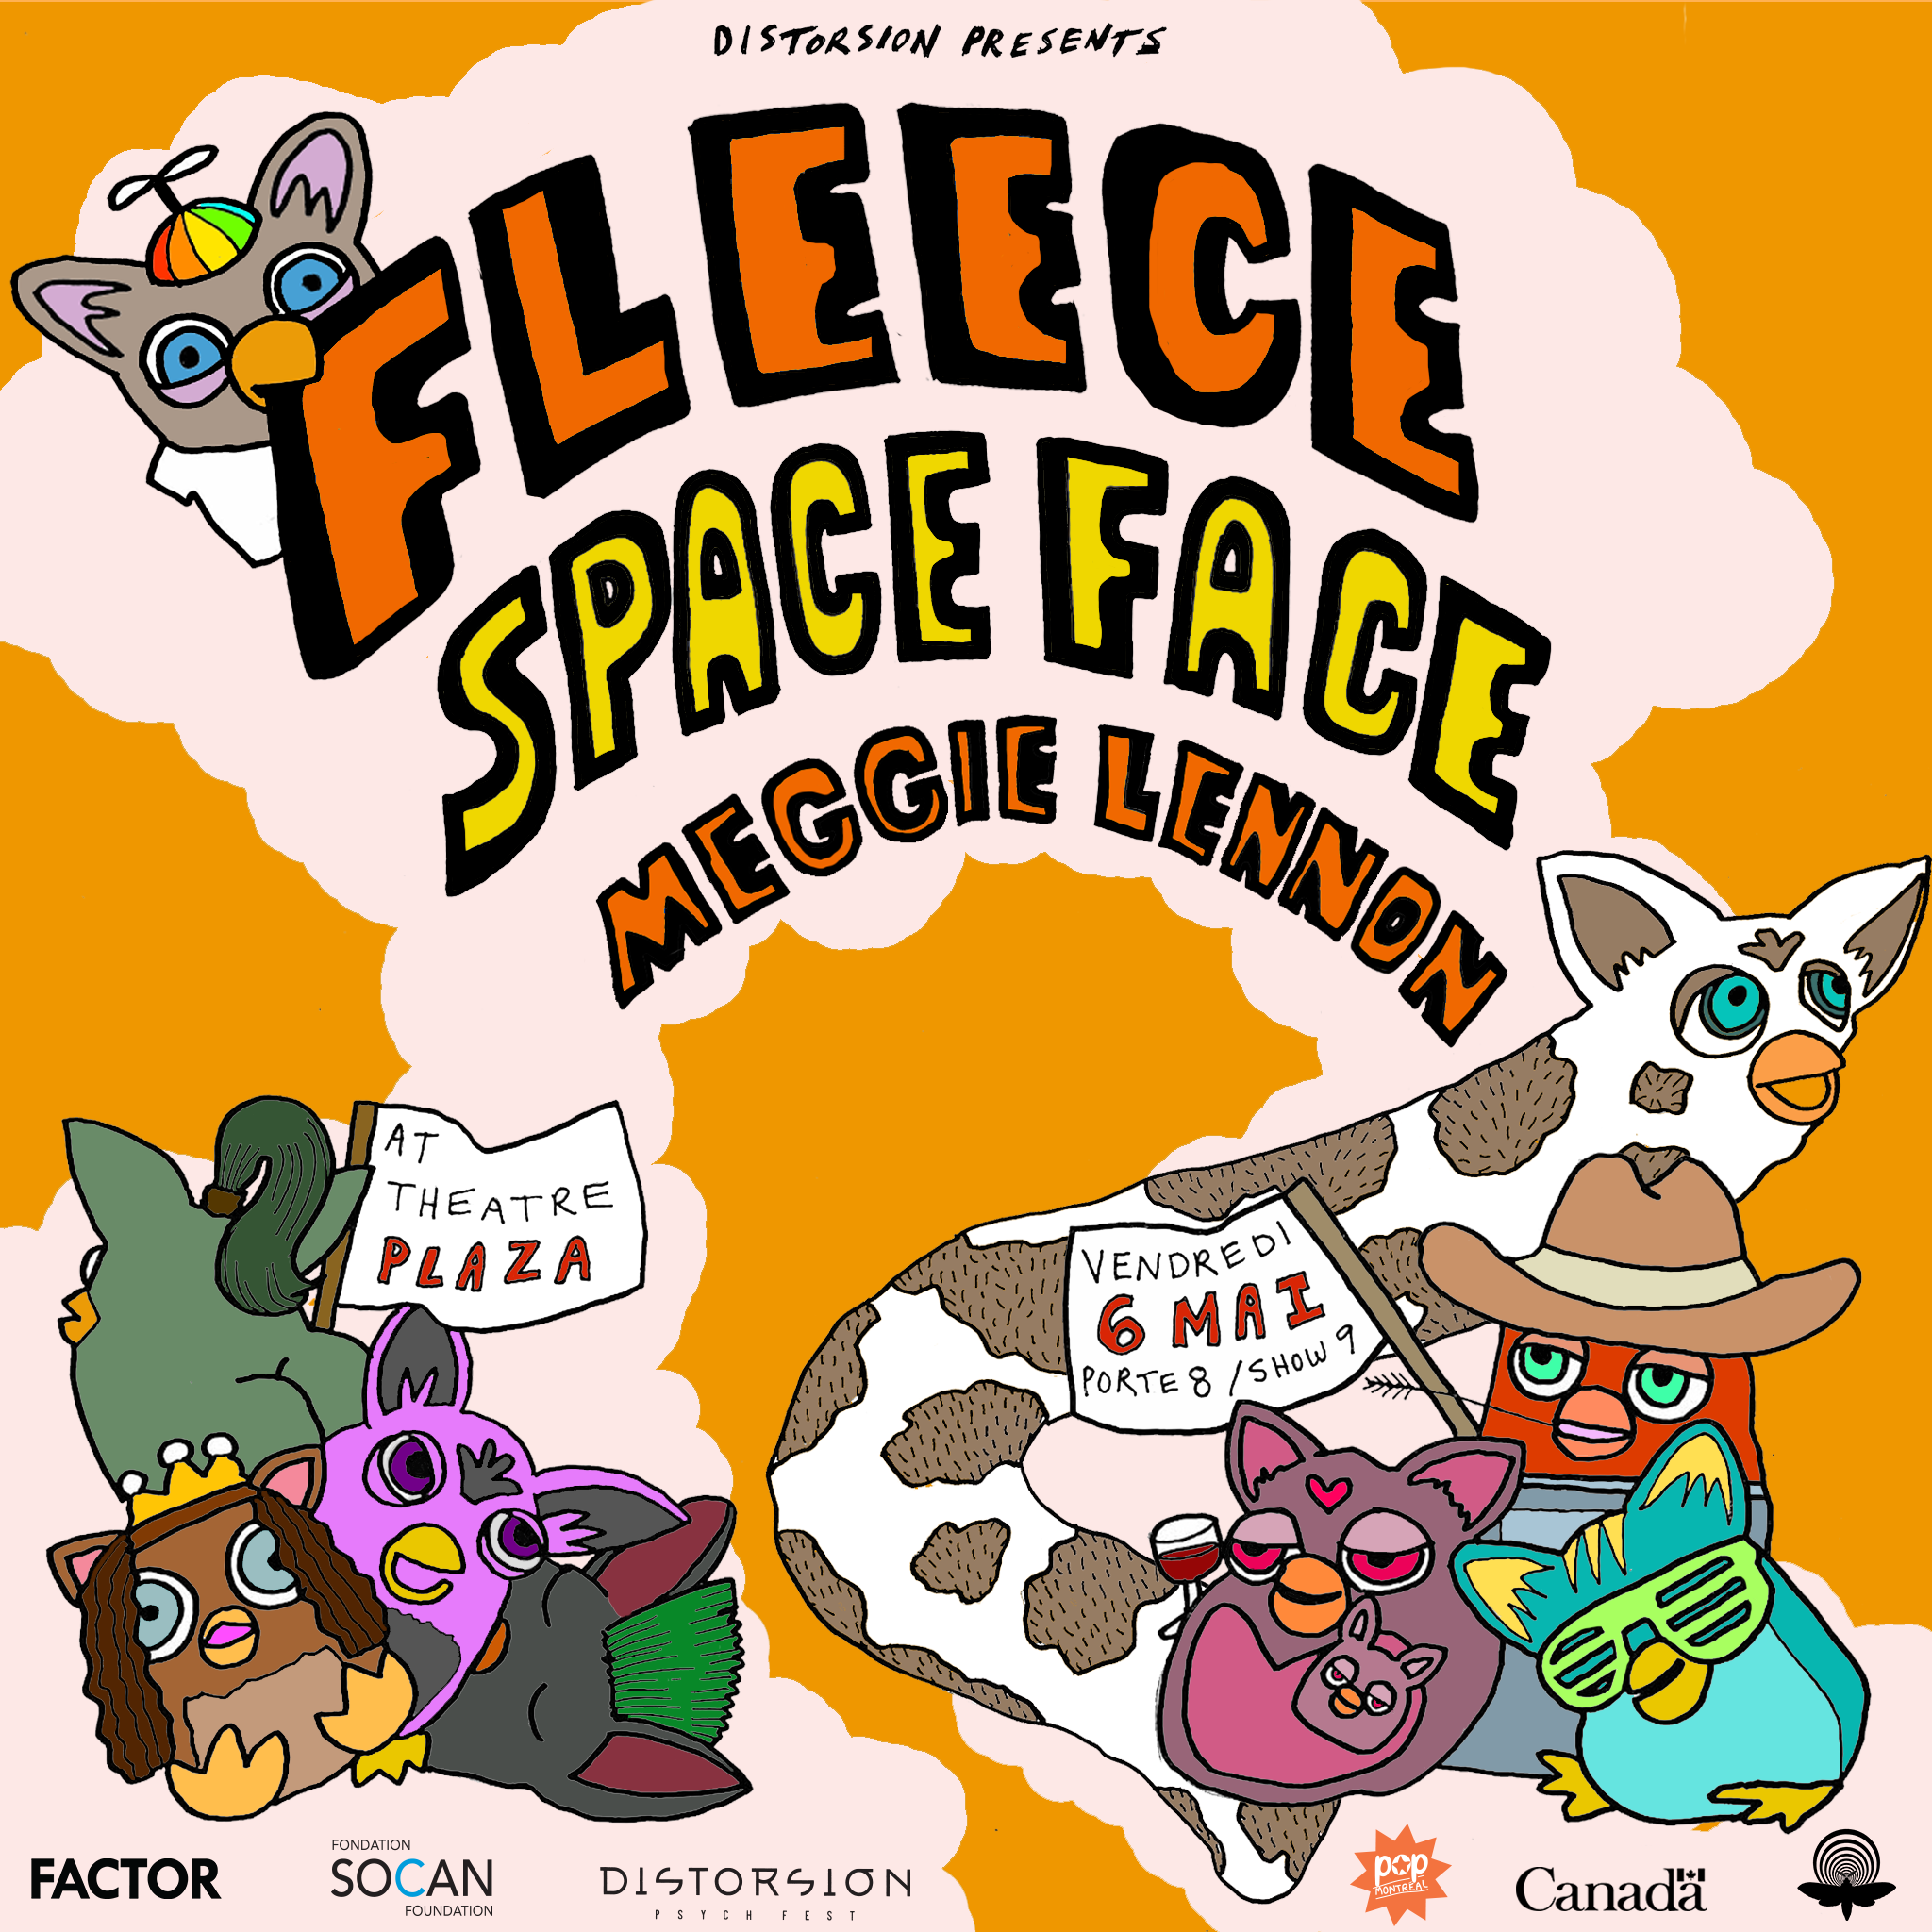 Fleece + Spaceface + Meggie Lennon